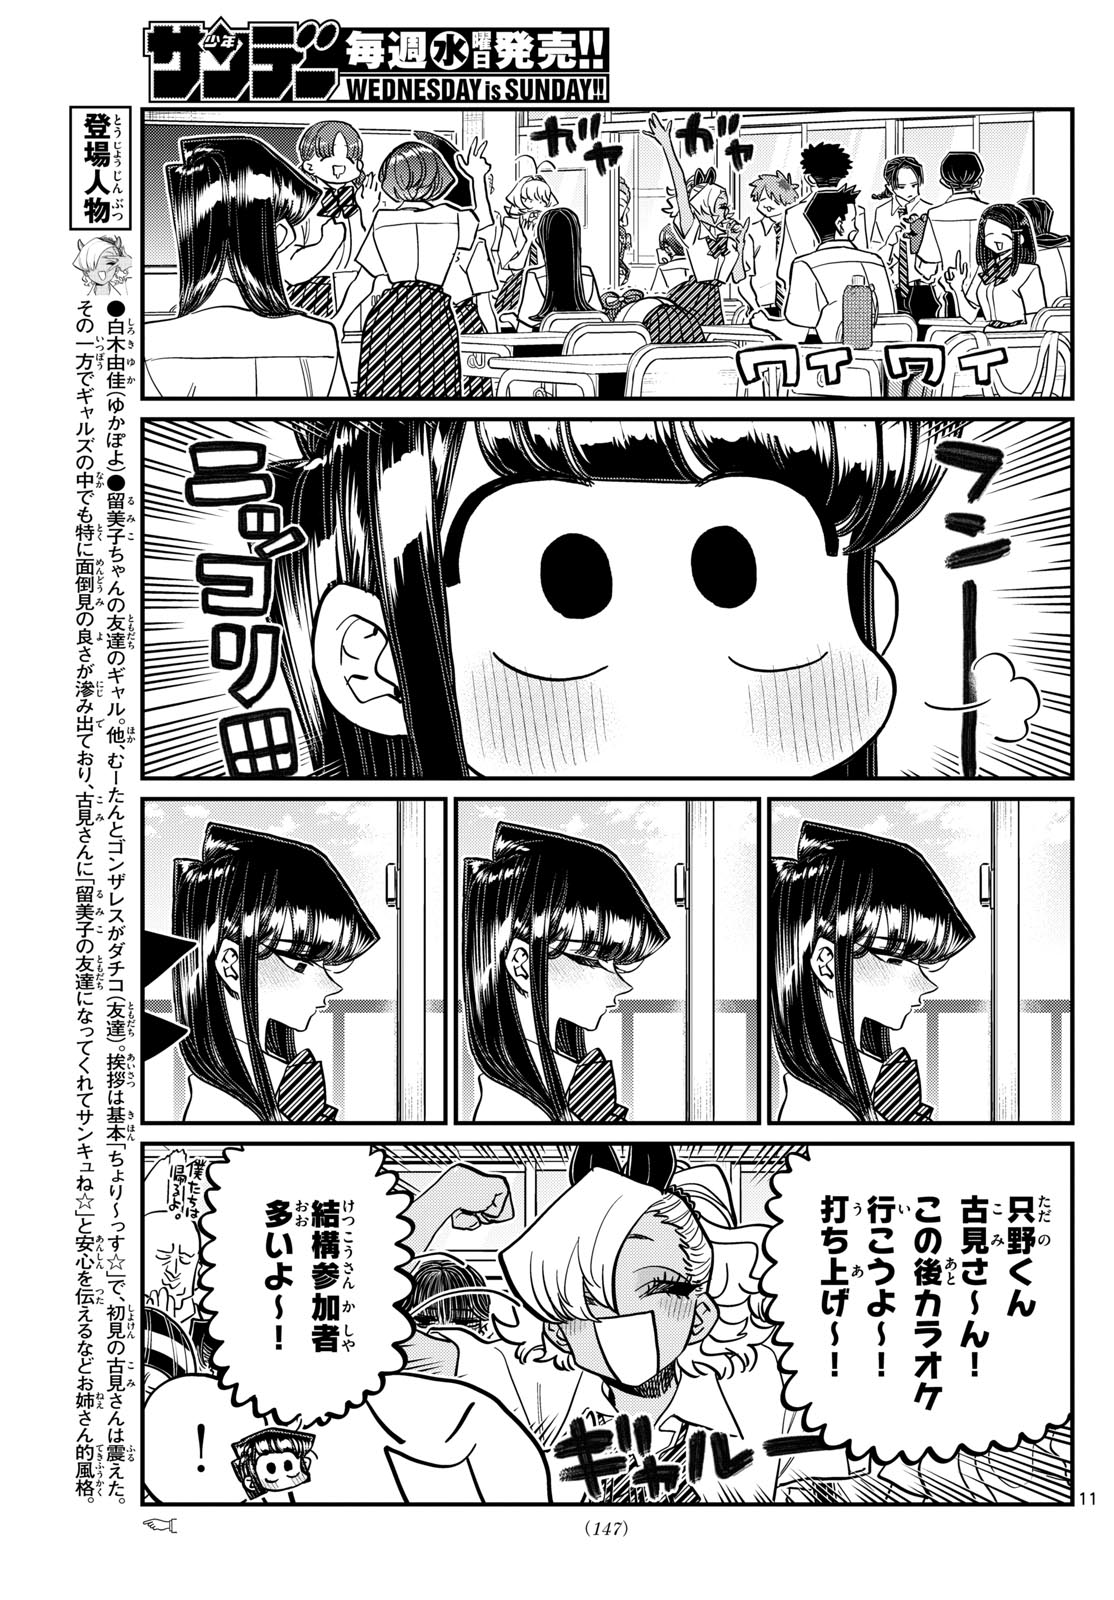 Komi-san wa Komyushou Desu - Chapter 432 - Page 11